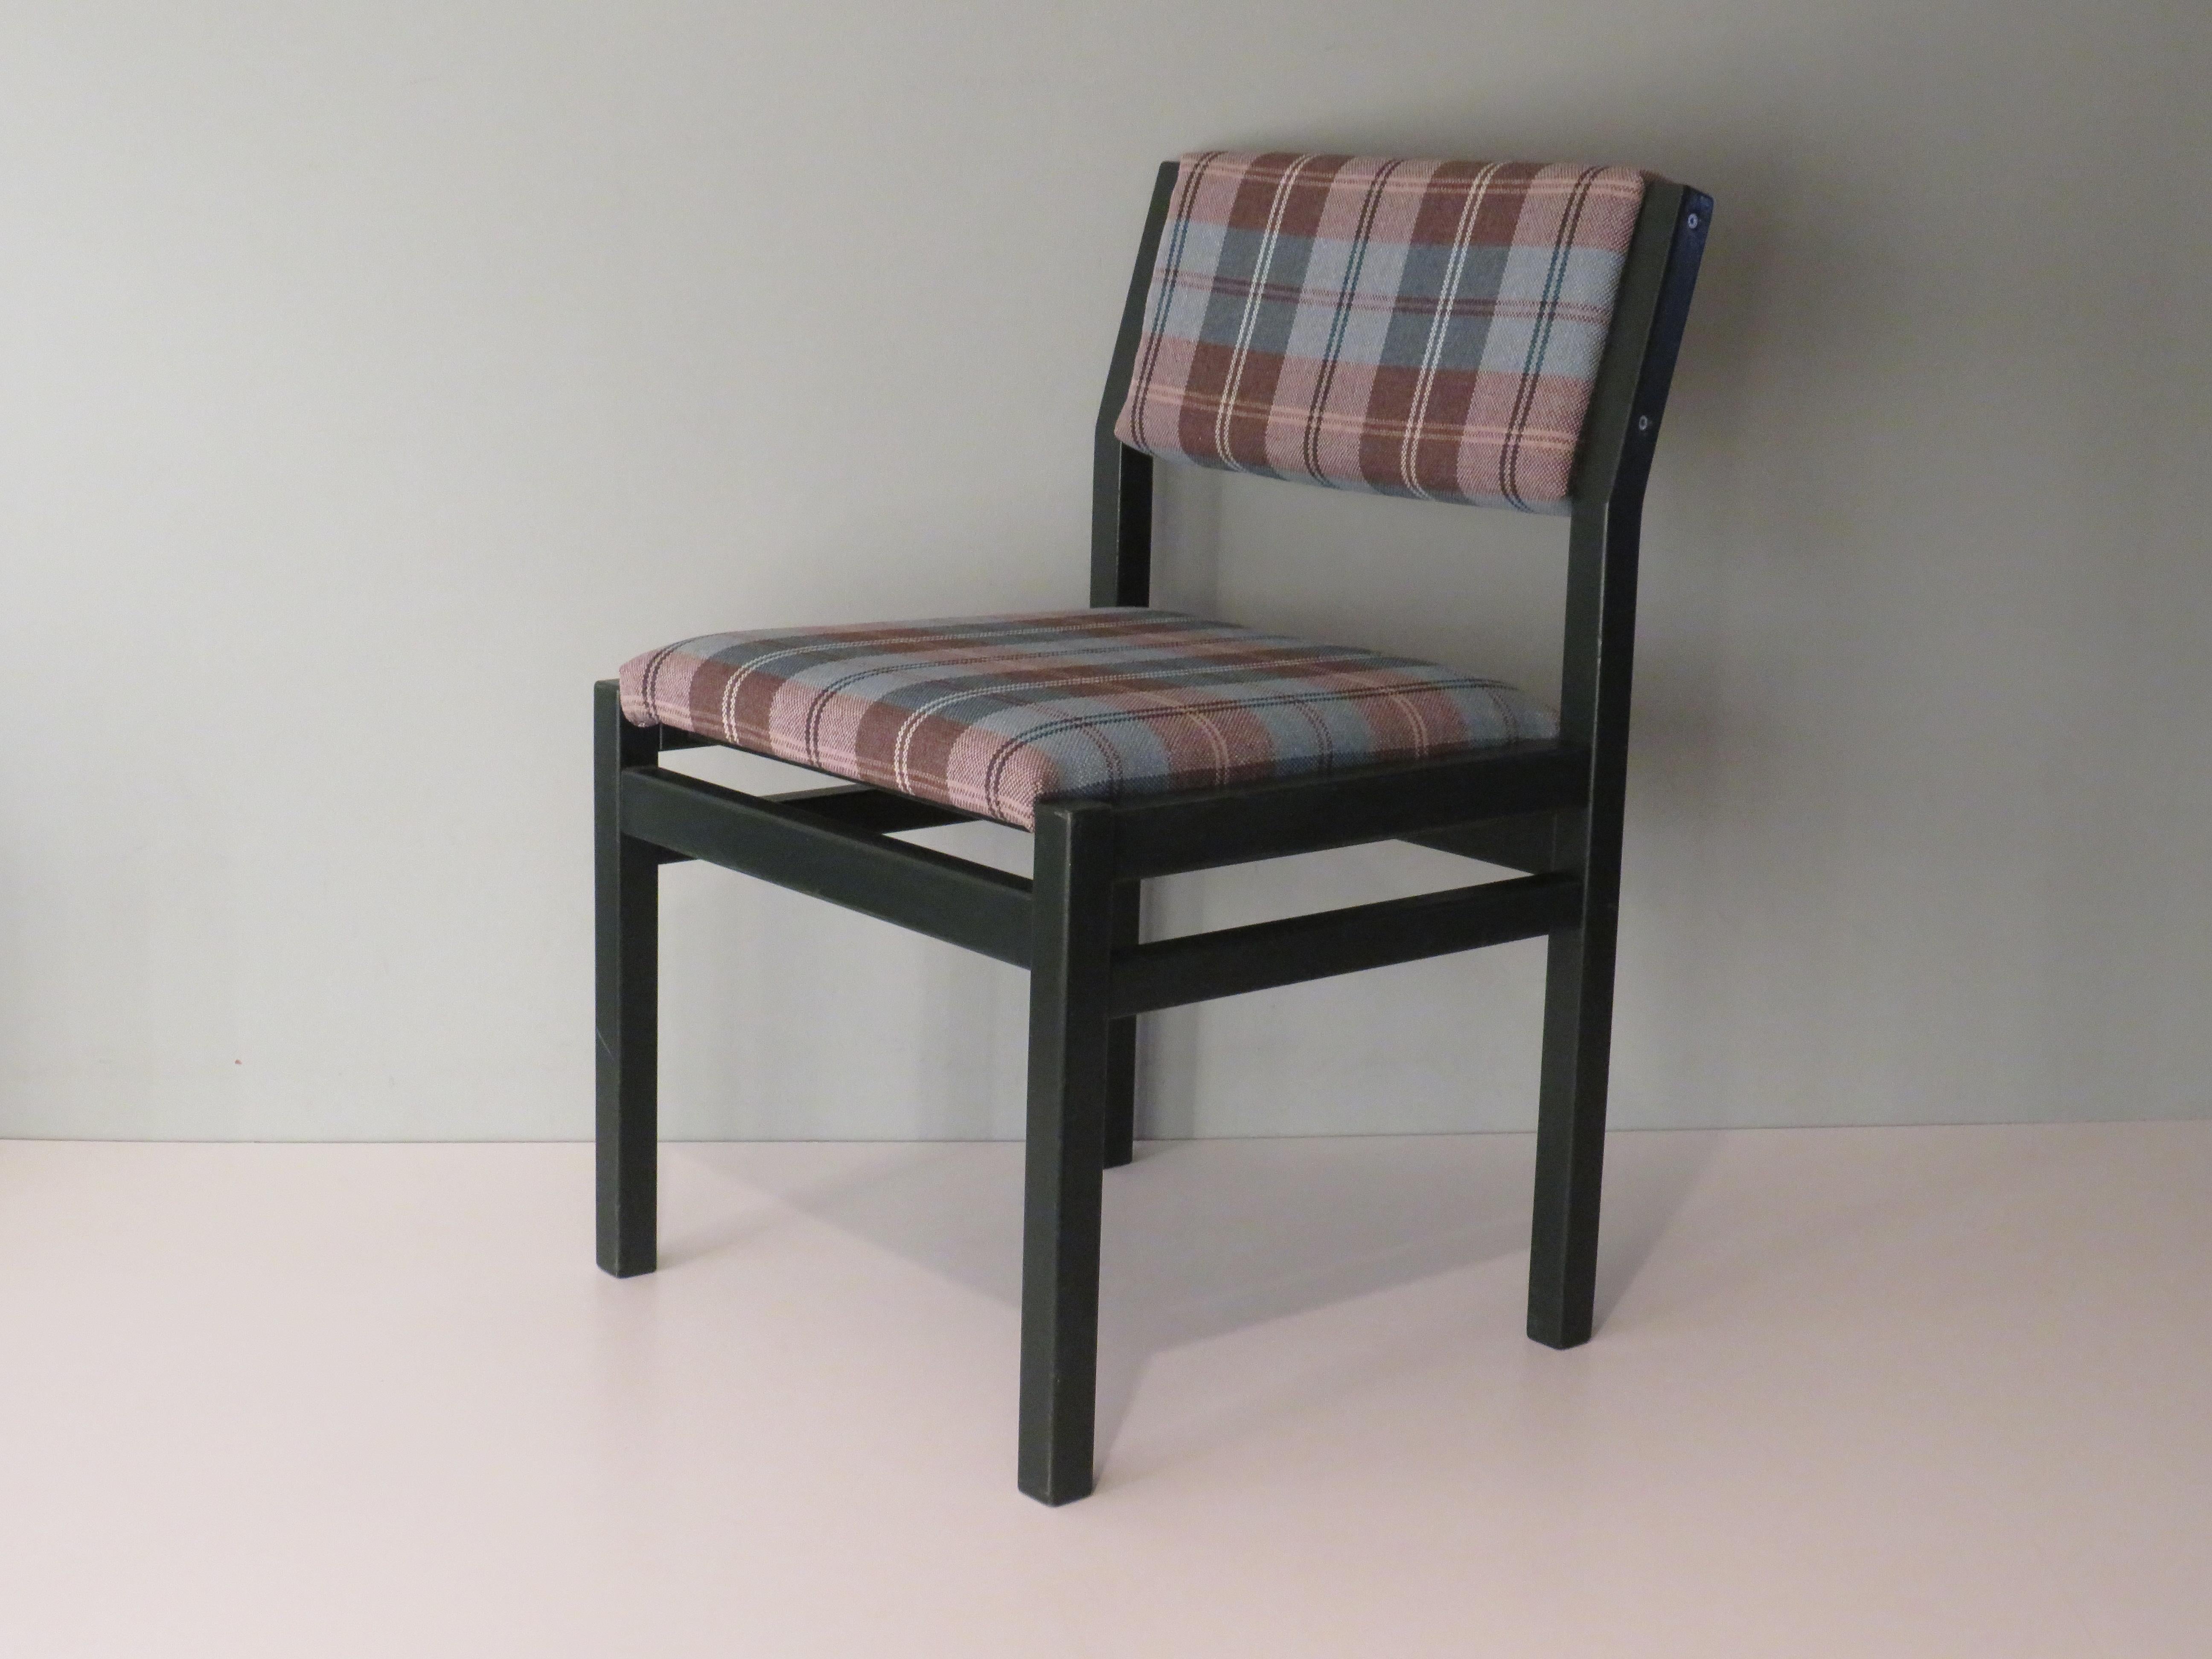 Les chaises minimalistes conçues par Cees Braakman en 1960 appartiennent à sa série japonaise.
Ils sont fabriqués en afro-teck laqué vert très foncé et, au fil du temps, ils ont été équipés d'une nouvelle mousse et d'un tissu à carreaux bleu-marron,